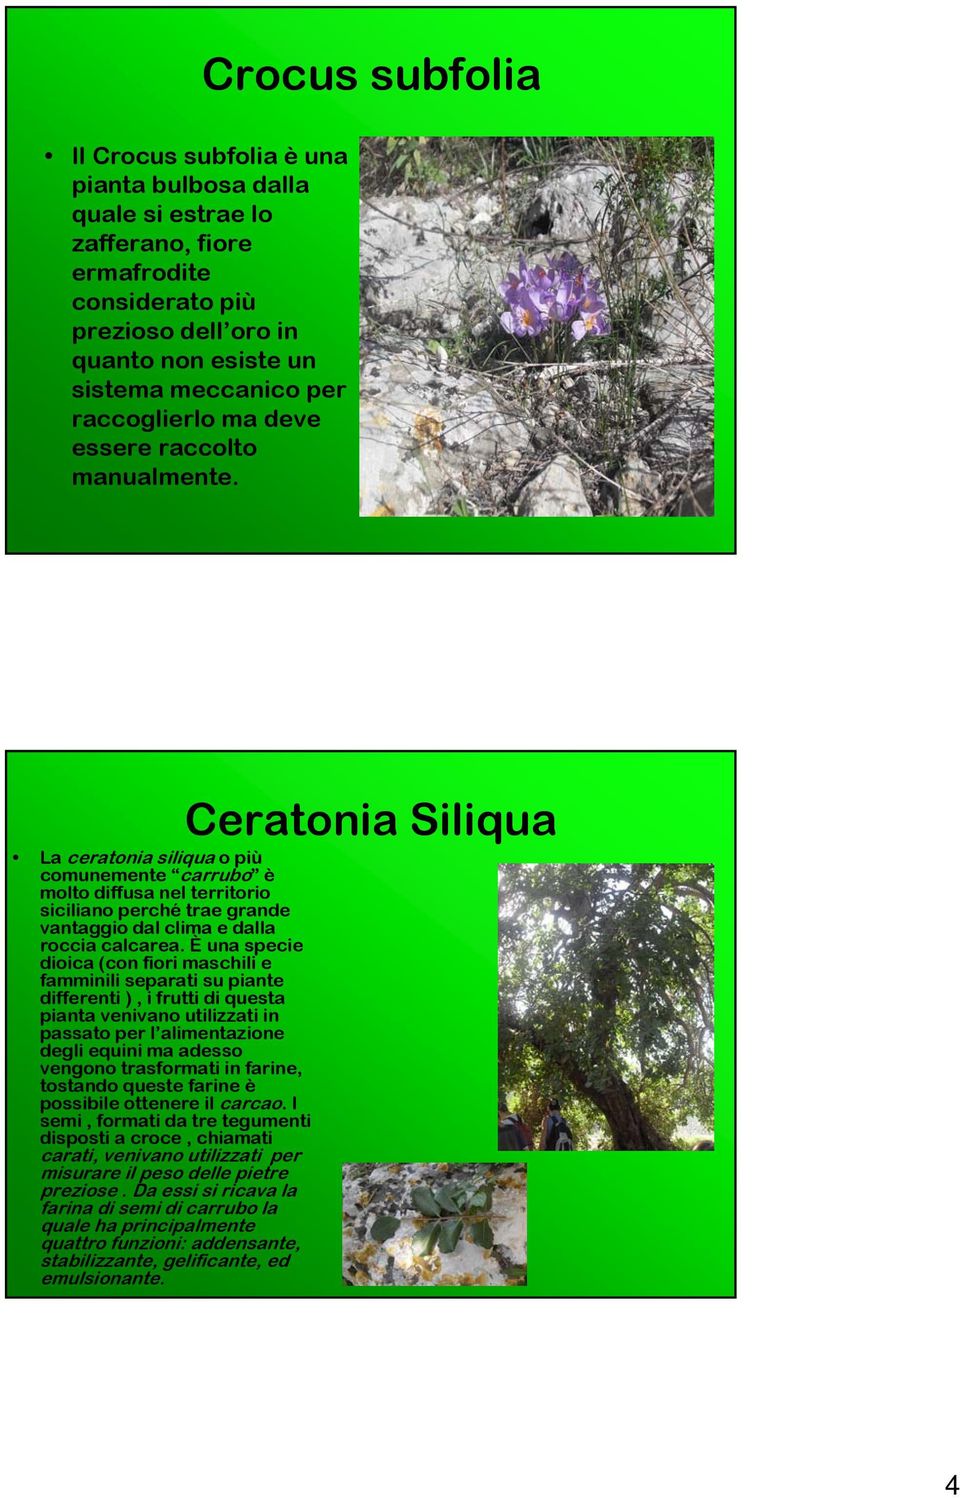 Ceratonia Siliqua La ceratonia siliqua o più comunemente carrubo è molto diffusa nel territorio siciliano perché trae grande vantaggio dal clima e dalla roccia calcarea.